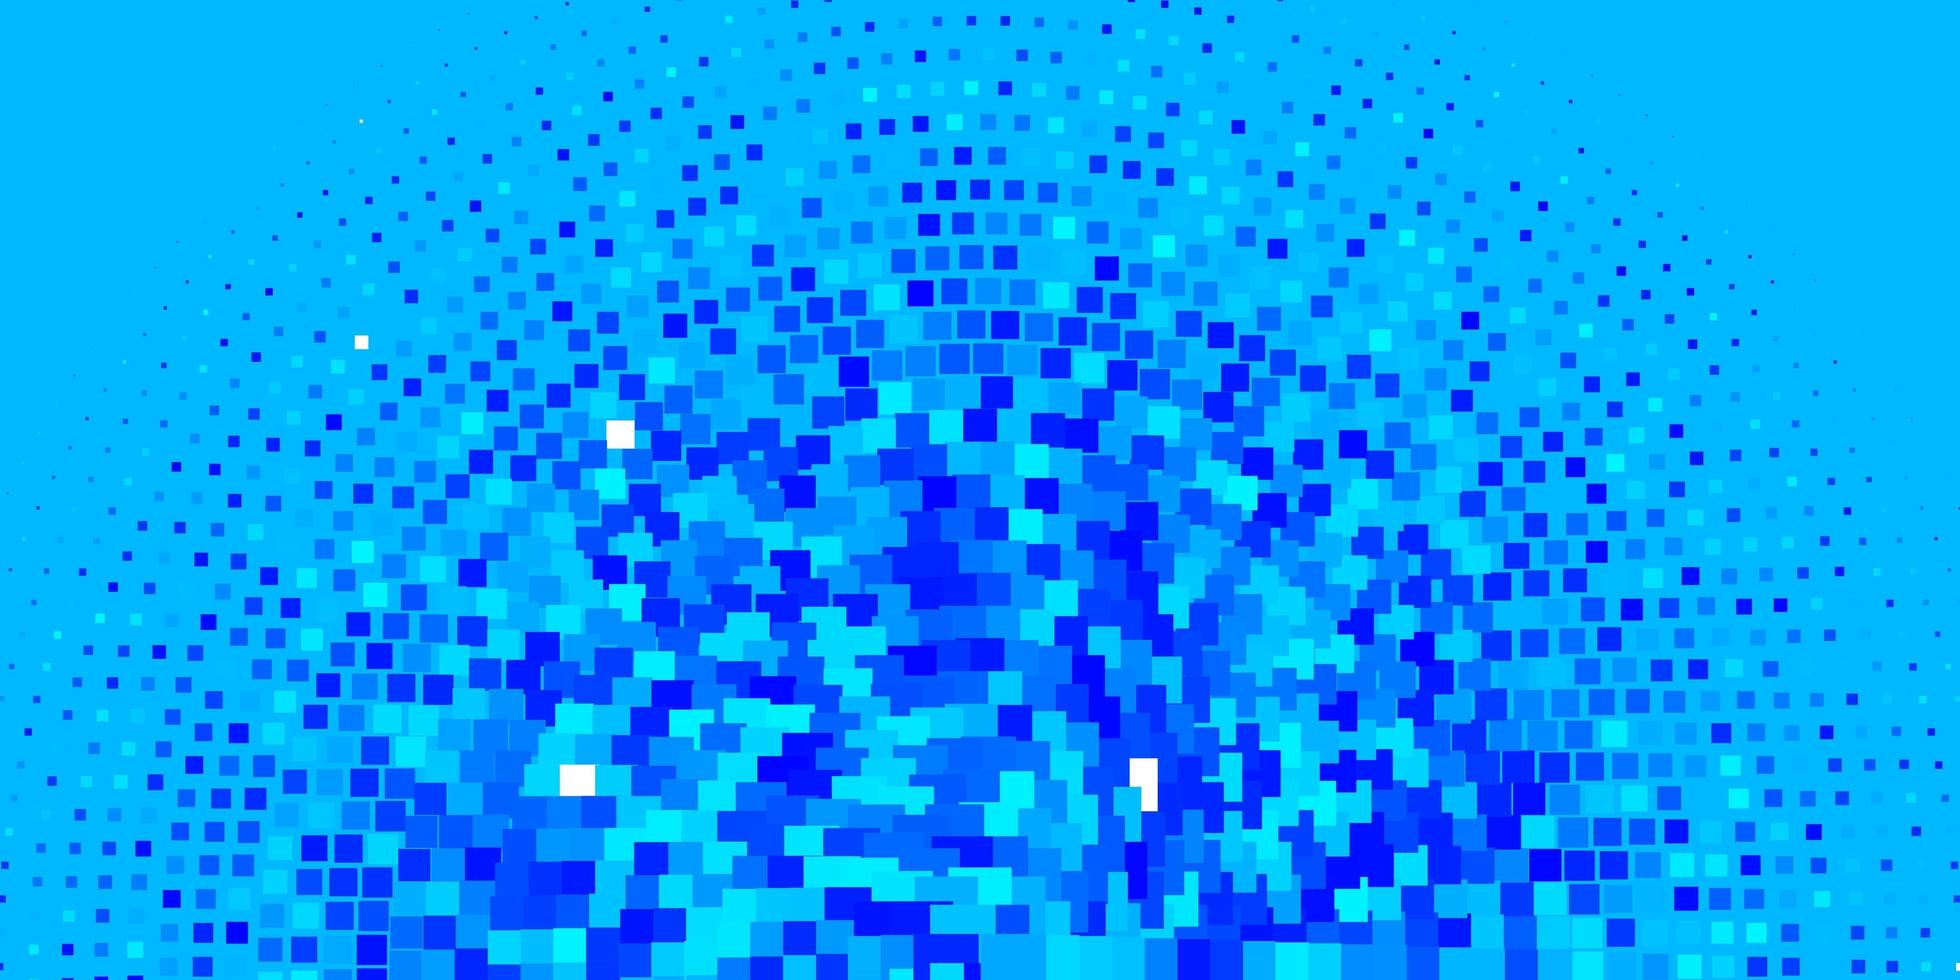 ljusblå vektormall i rektanglar. ny abstrakt illustration med rektangulära former. mönster för affärshäften, broschyrer vektor